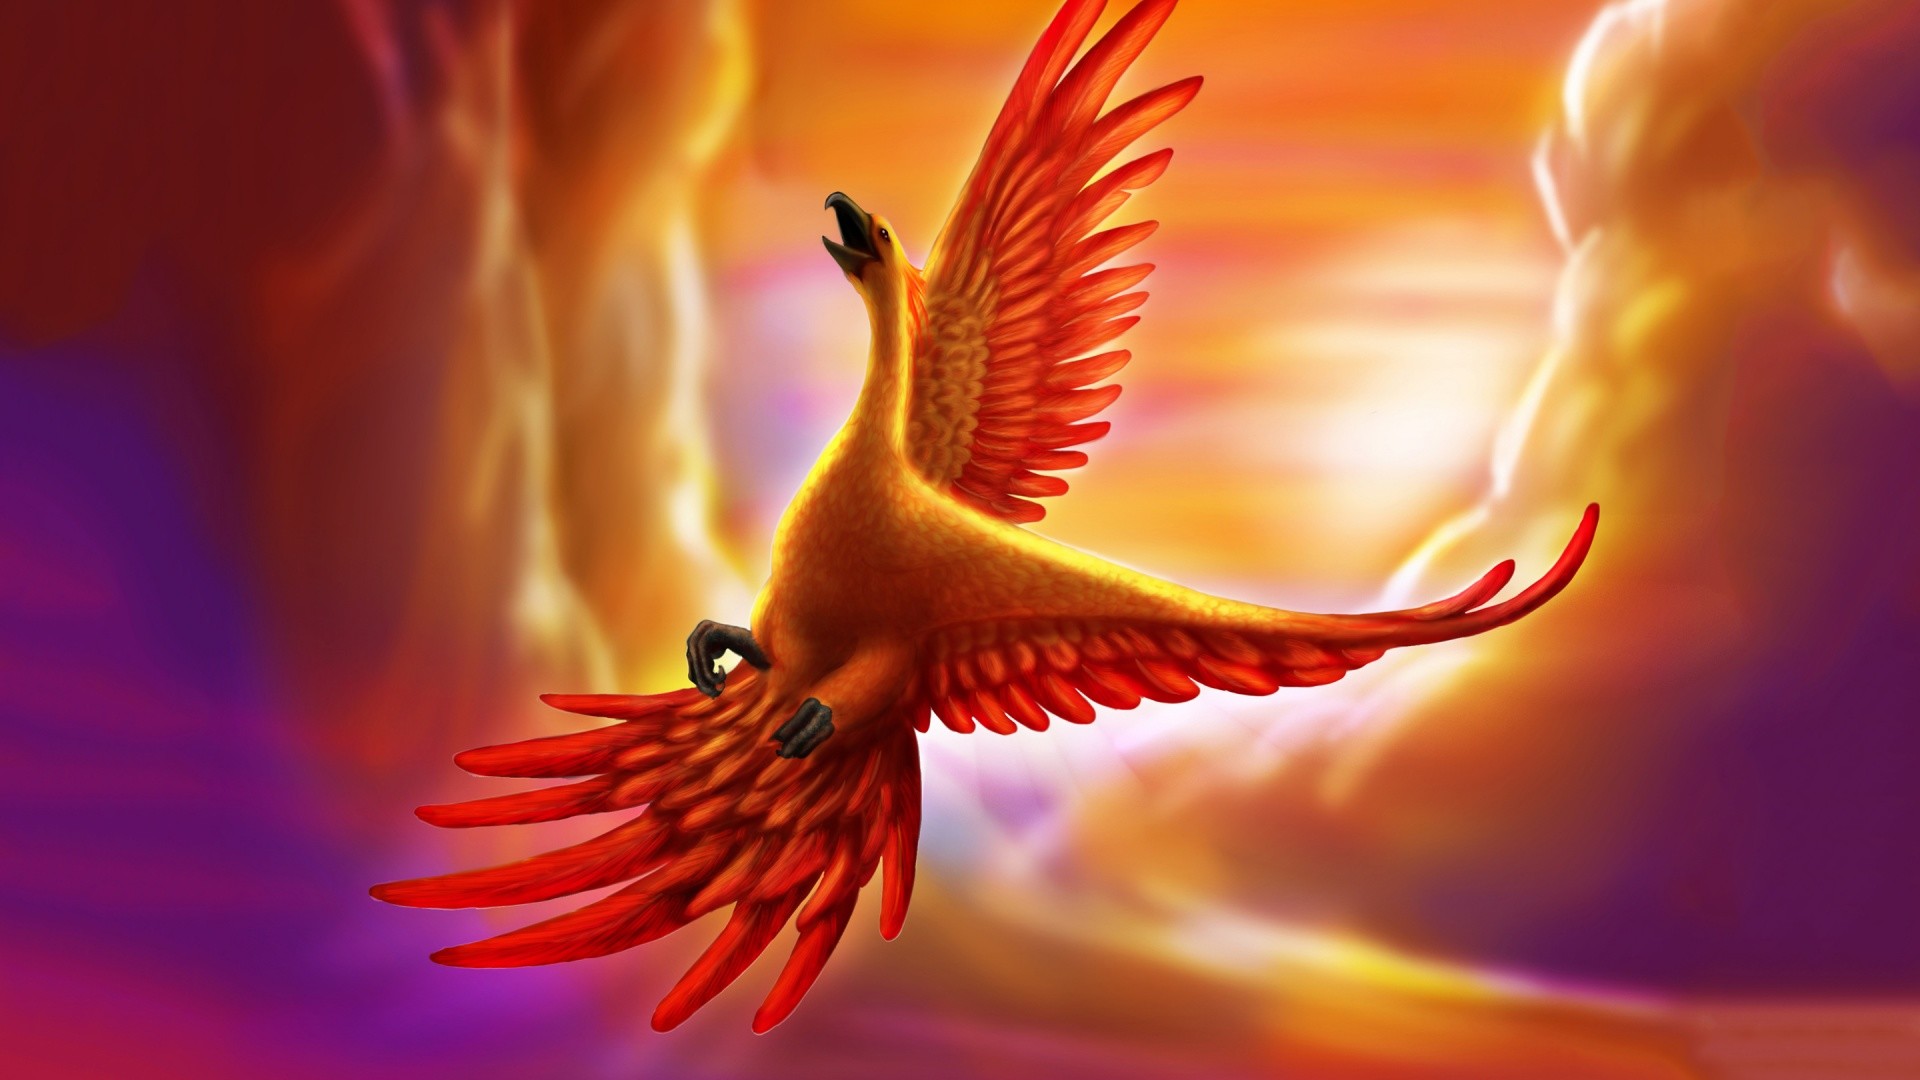 1920x1080 Fire phoenix bird wallpaper HD.